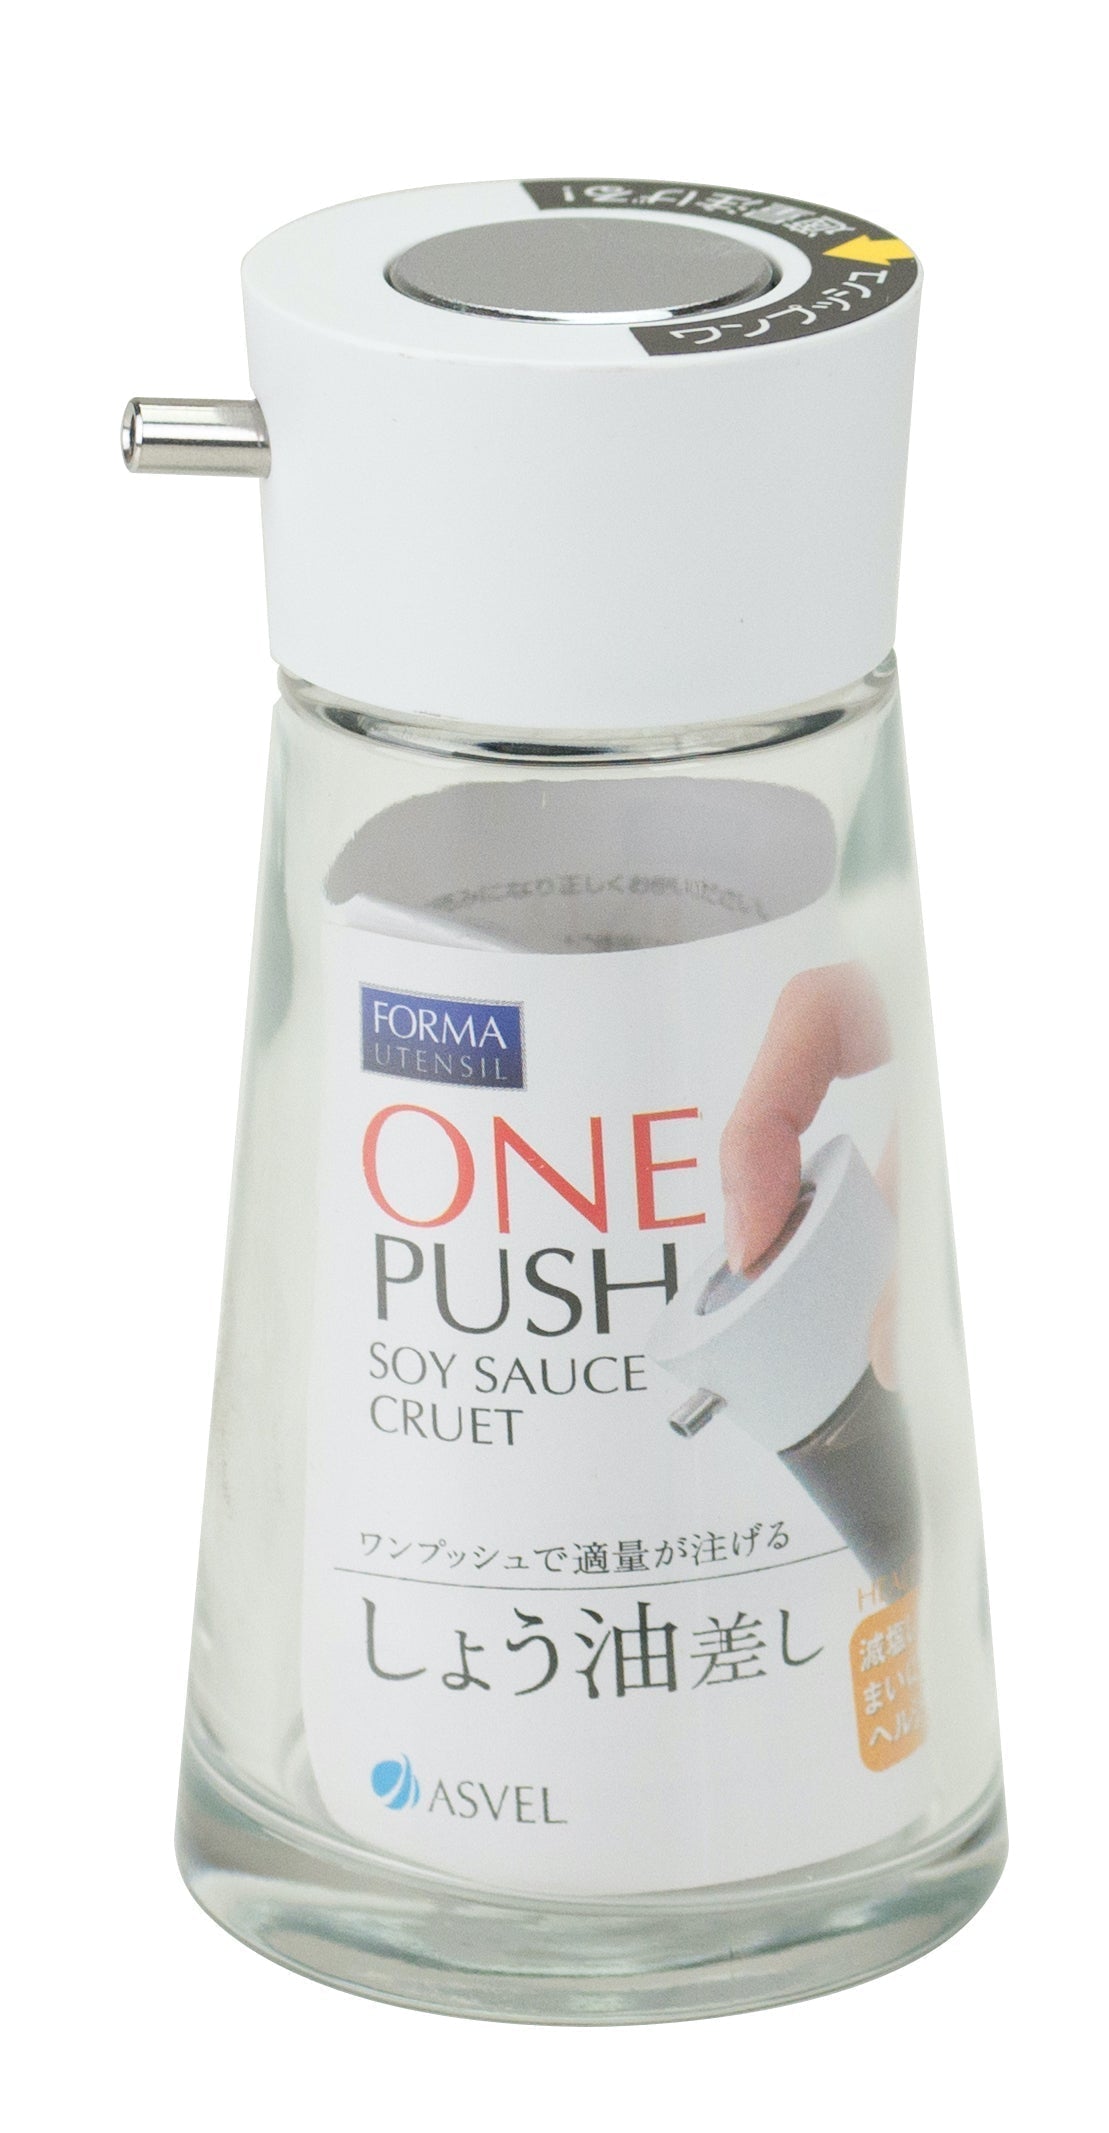 Asvel Forma One-Push Soy Sauce Bottle Large White